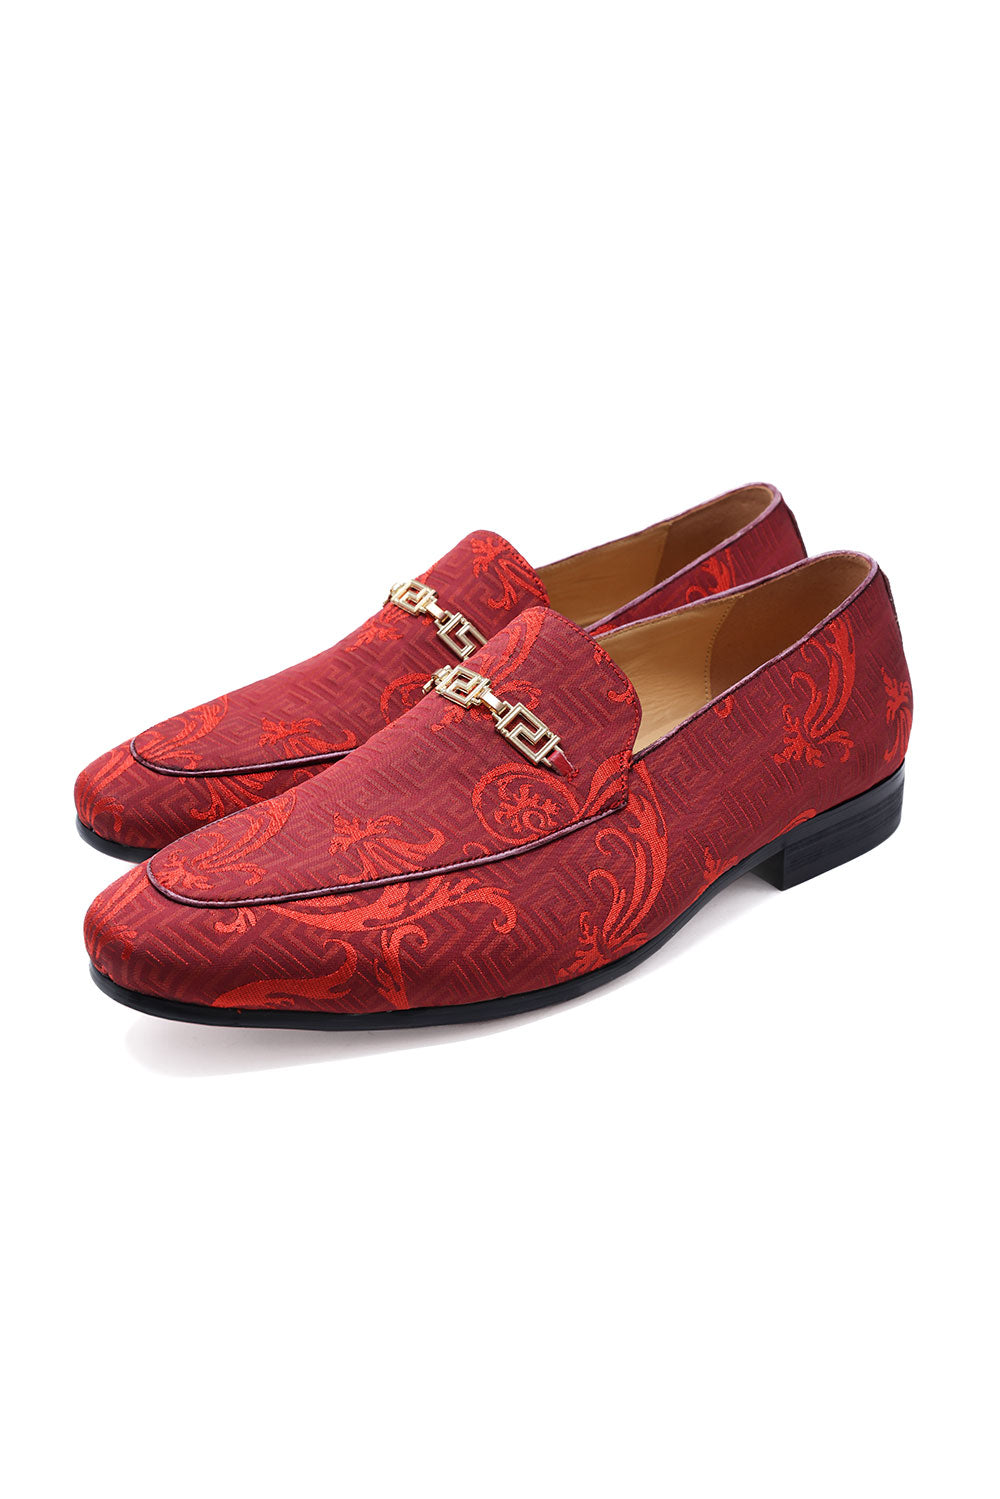 BARABAS Men's Greek Pattern Floral Baroque Prom Dress Shoes SH3100 Scarlet